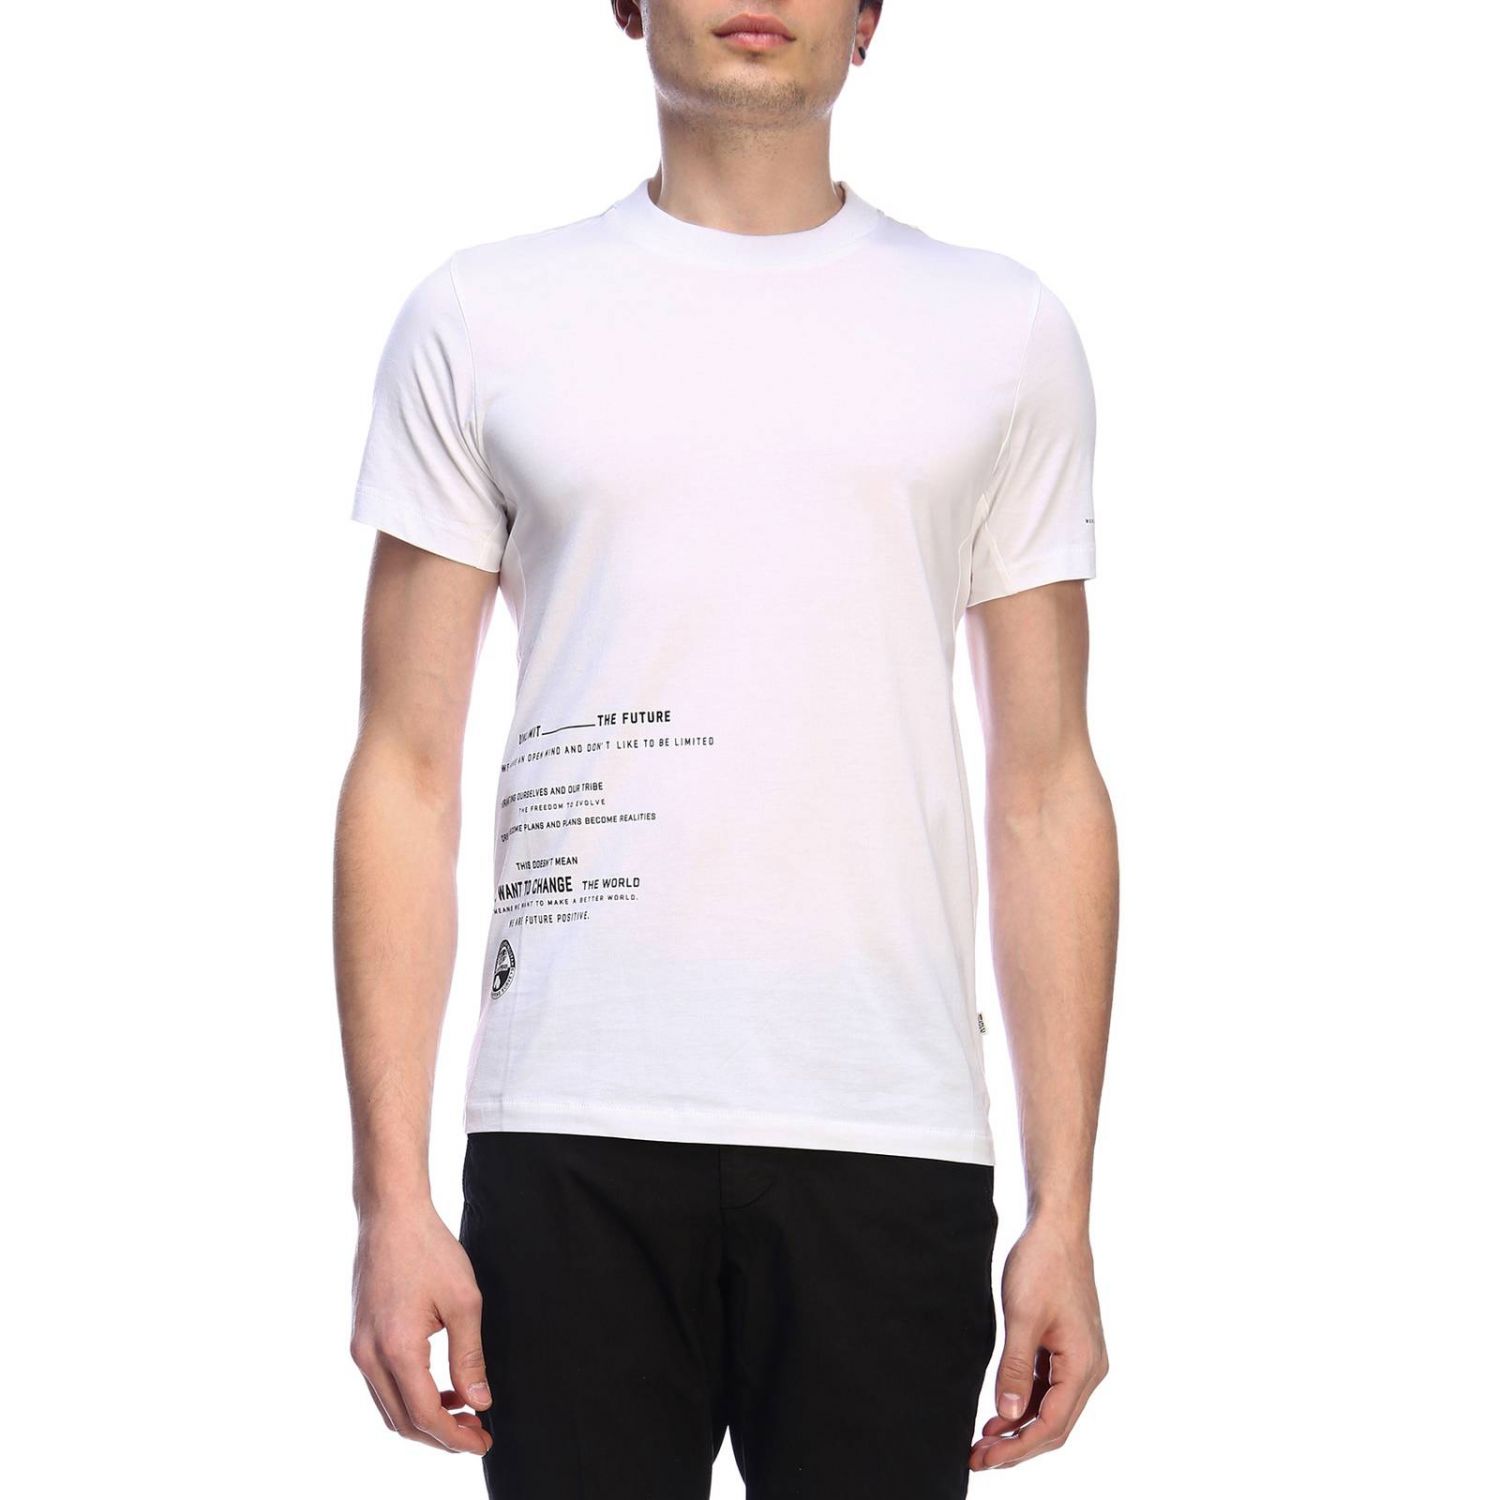 Napapijri Outlet: T-shirt men | T-Shirt Napapijri Men White | T-Shirt ...